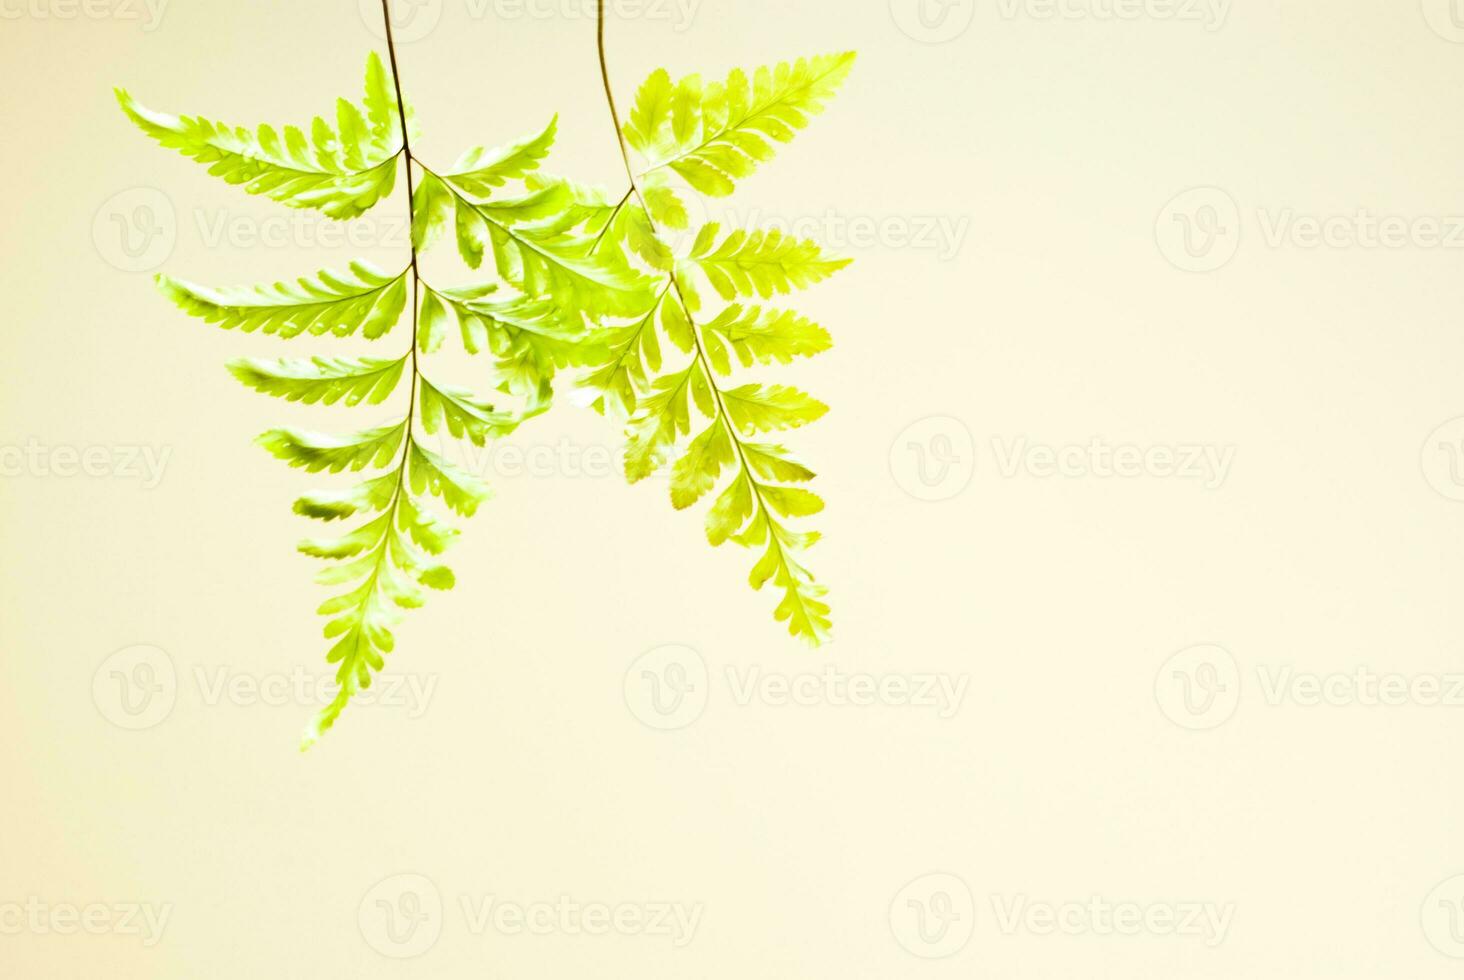 Fraîcheur verte des feuilles de fougère sur fond blanc photo